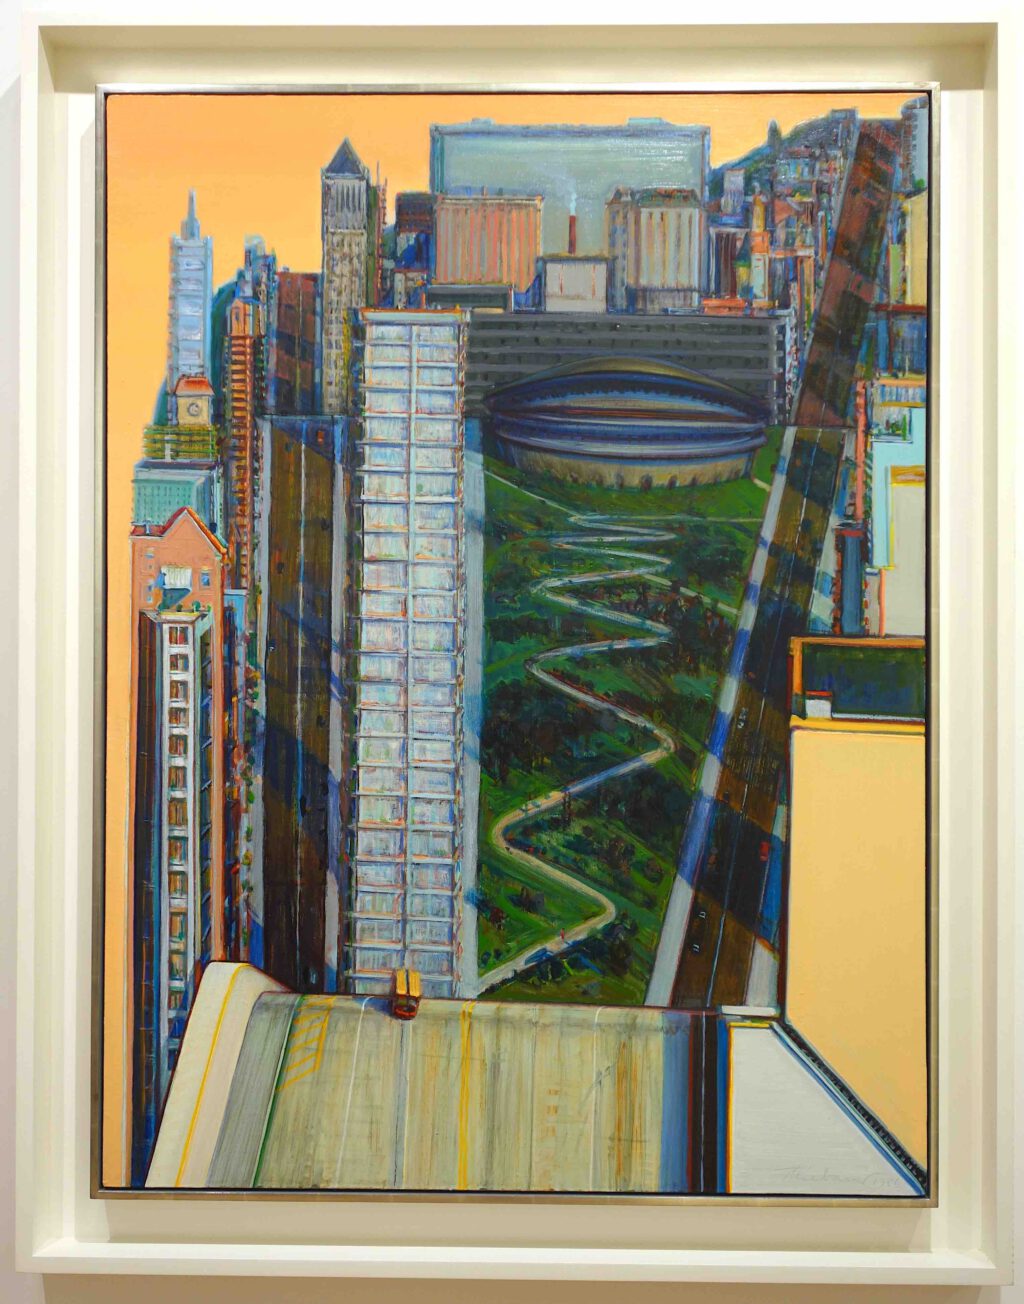 Wayne Thiebaud Civic Center 1986. Oil on canvas, 121.9 x 91.4 cm @ Acquavella